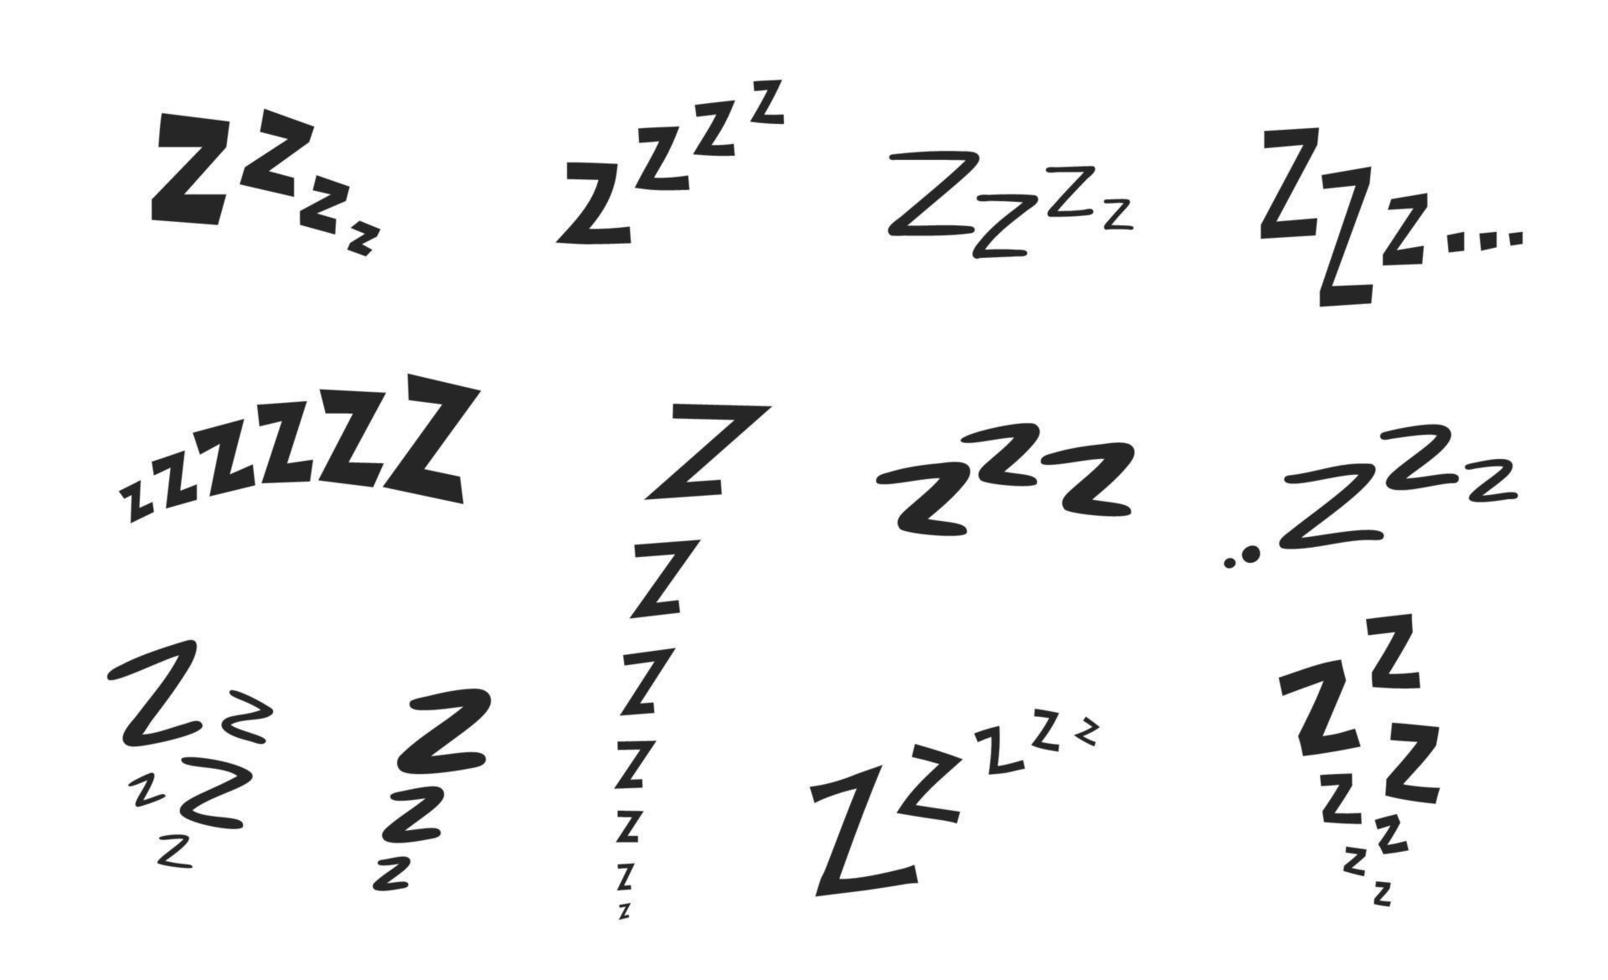 zzz zzzz Bett Schlaf Schnarch Symbole, Schlummer Nickerchen Z Sound vektor